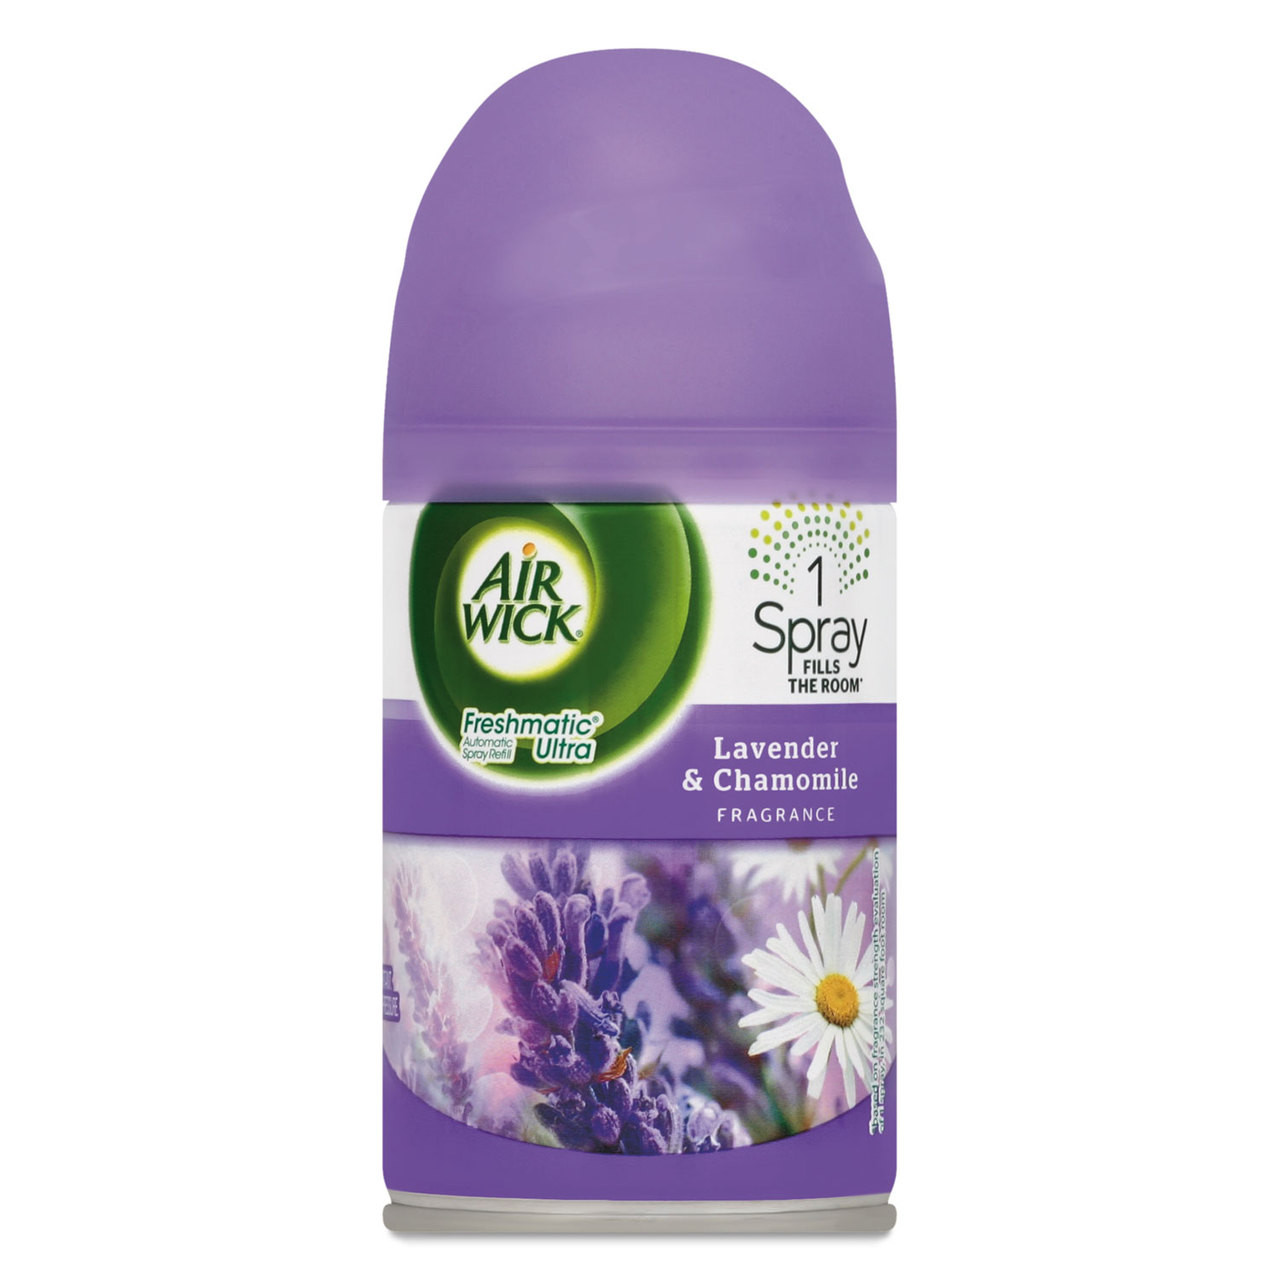 Air Wick Freshmatic Ultra Automatic Spray Refill, Lavender/Chamomile,  Aerosol, 6.17 oz, 77961